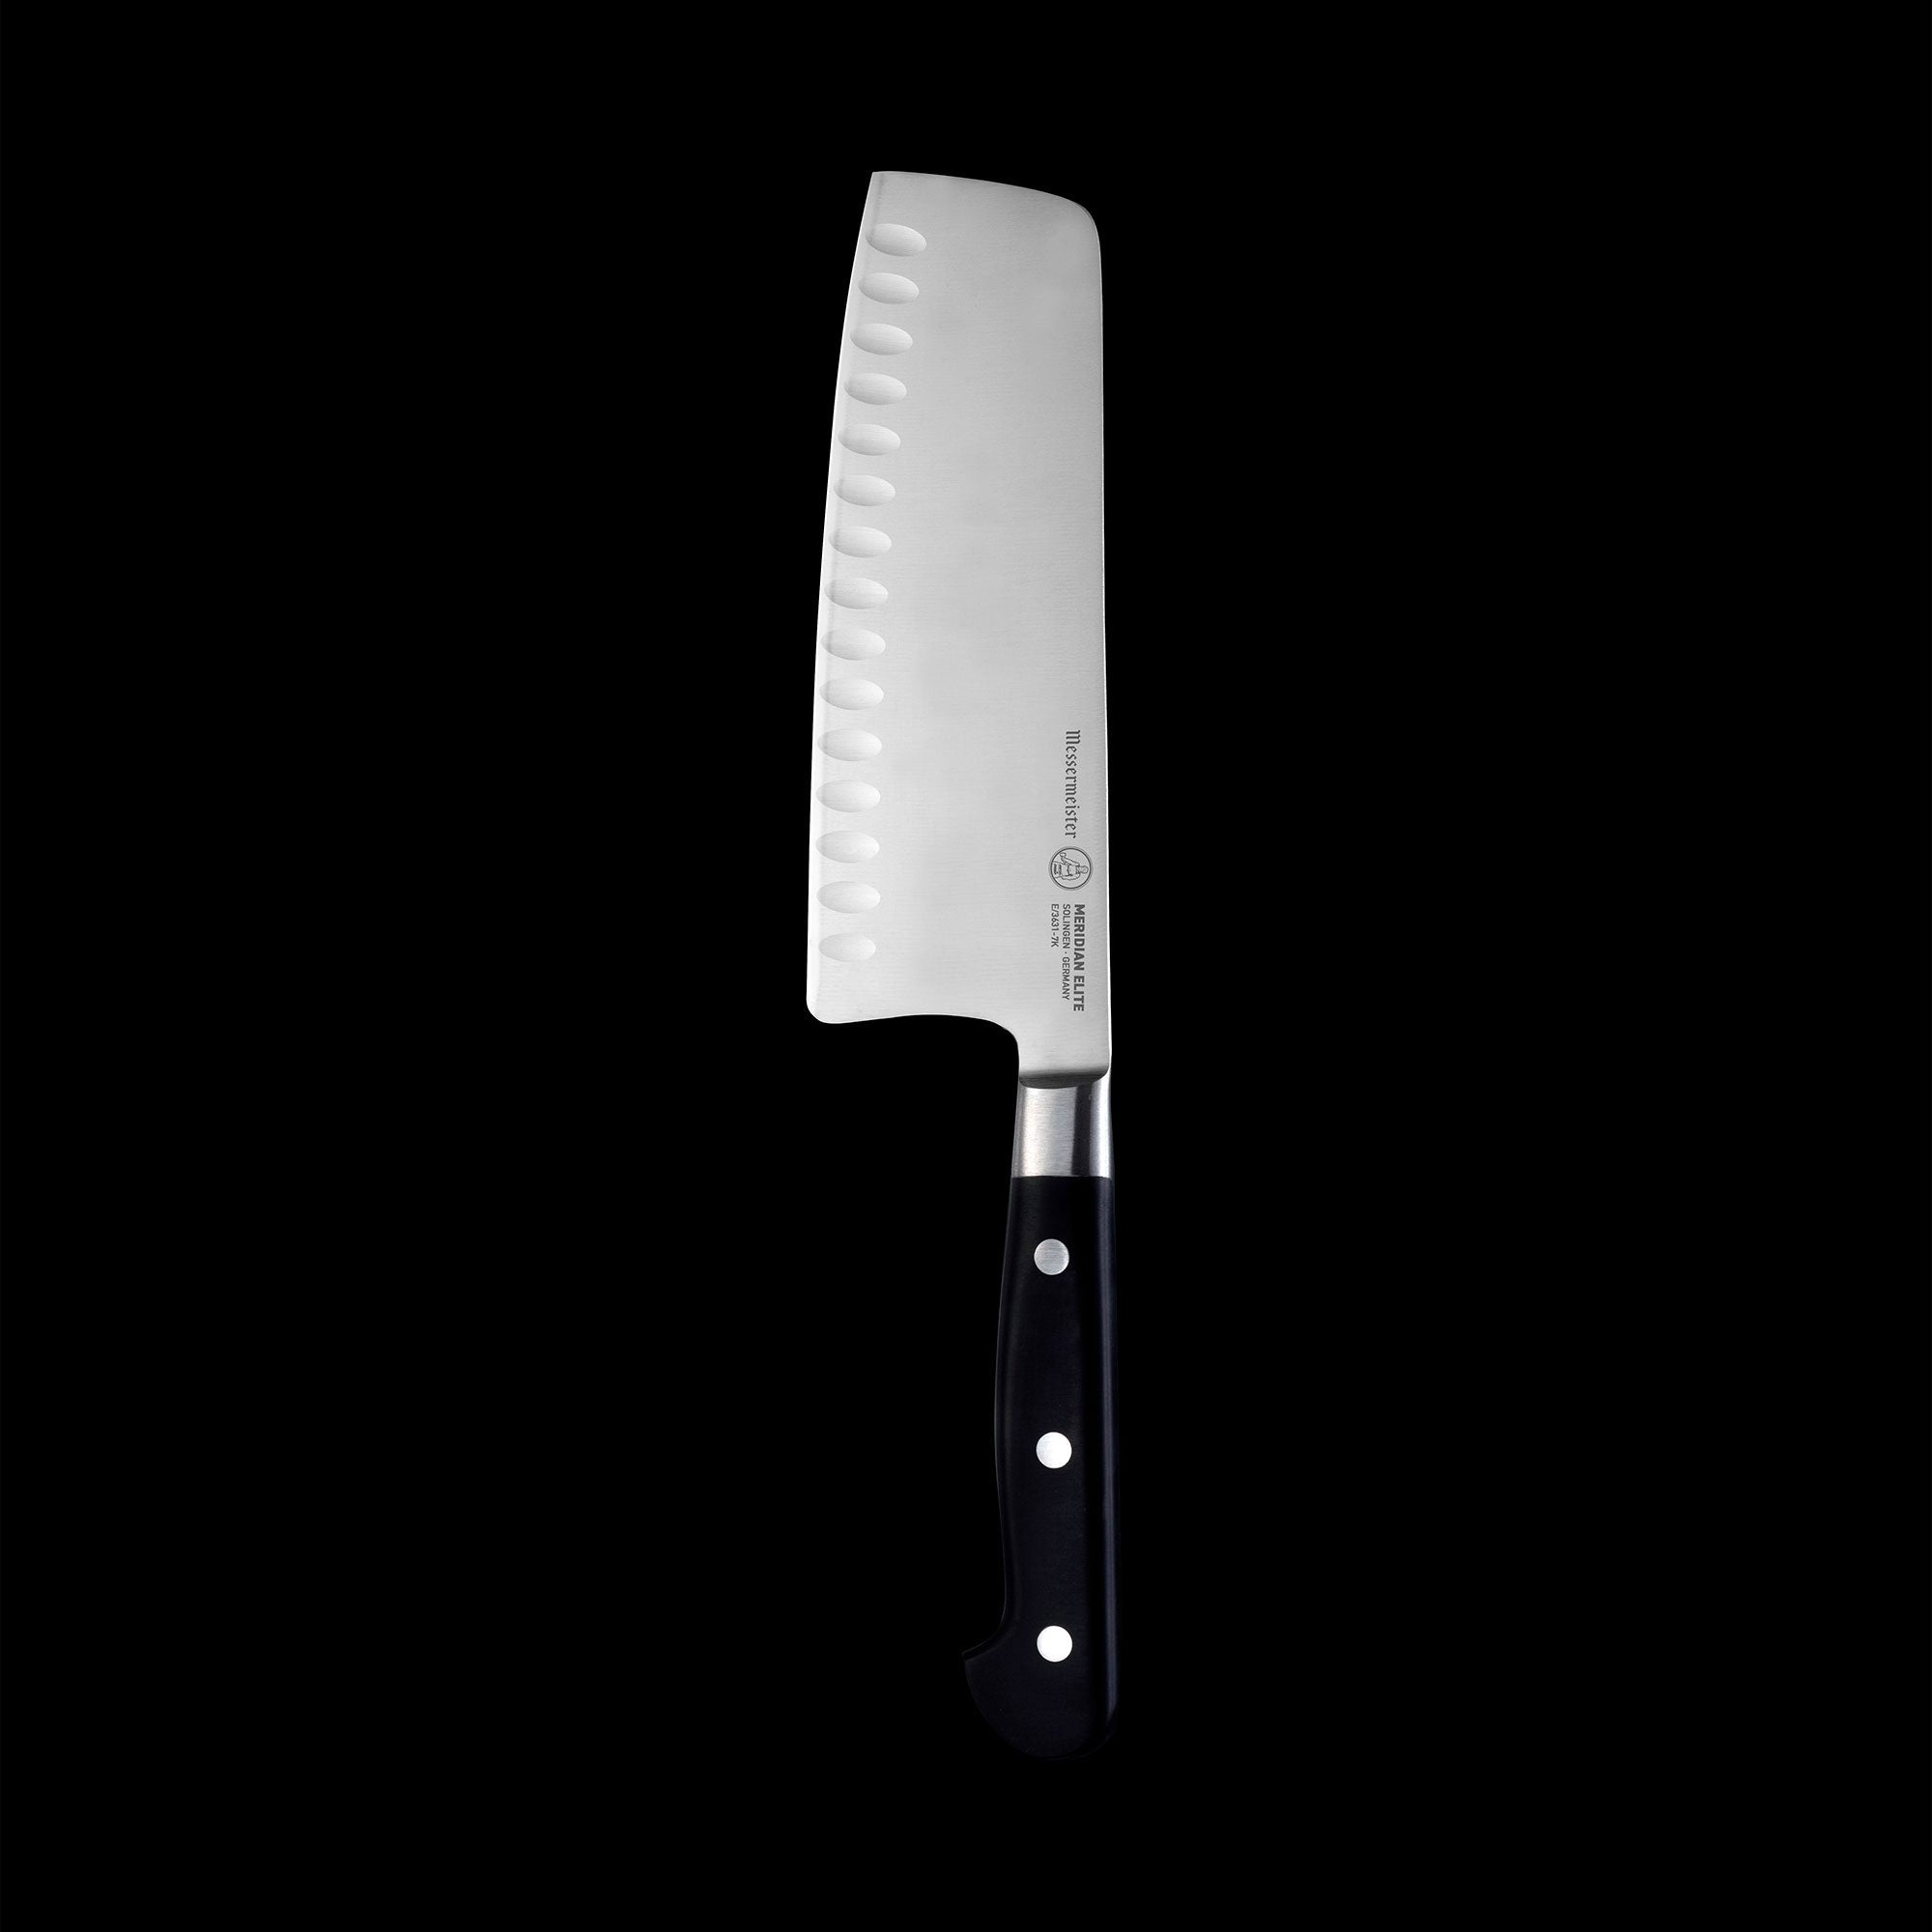 Meridian Elite 7 Inch Kullens Vegetable Knife